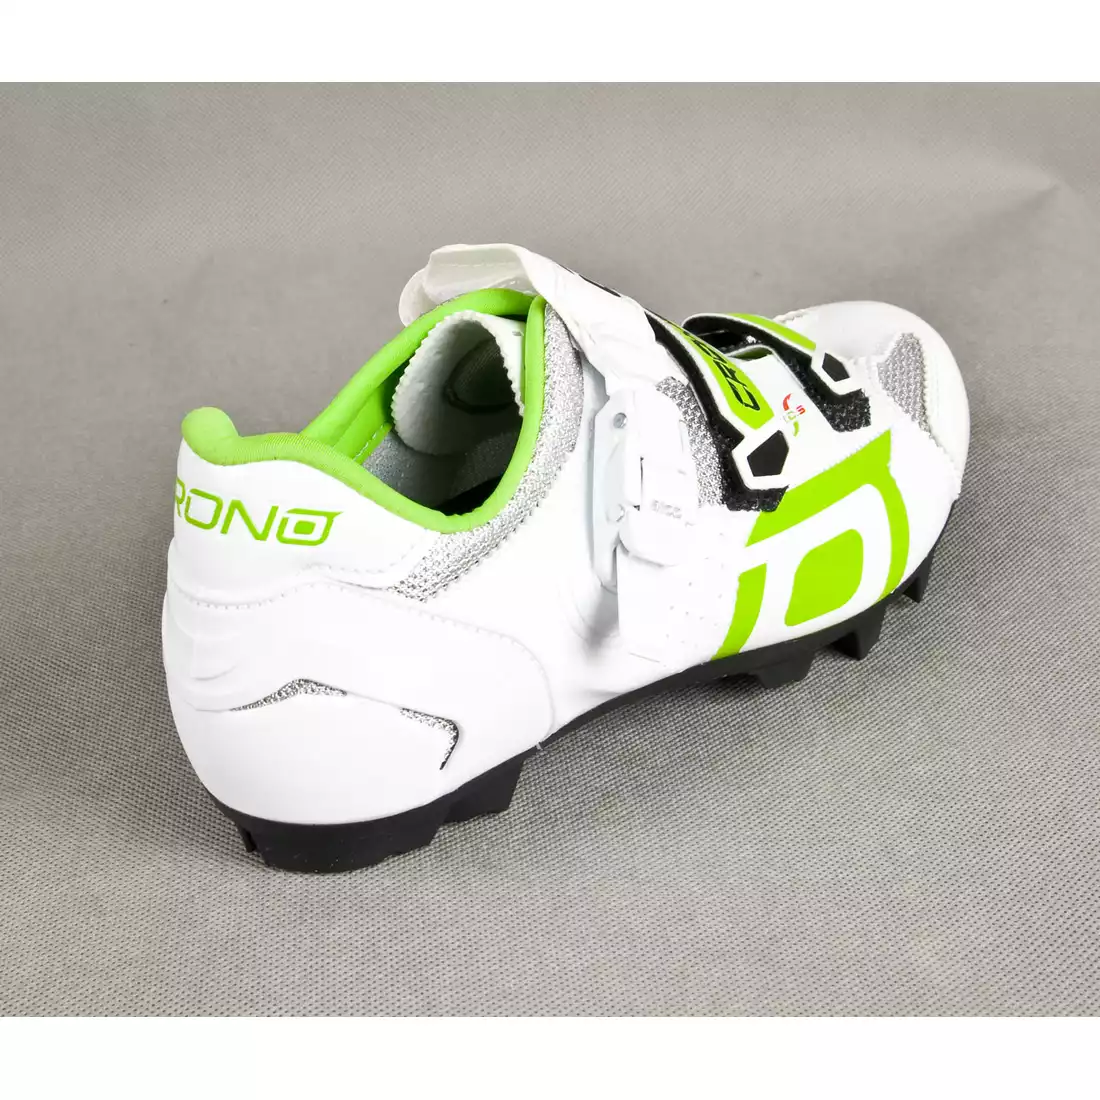 CRONO TRACK - buty rowerowe MTB - kolor: Biało-zielony